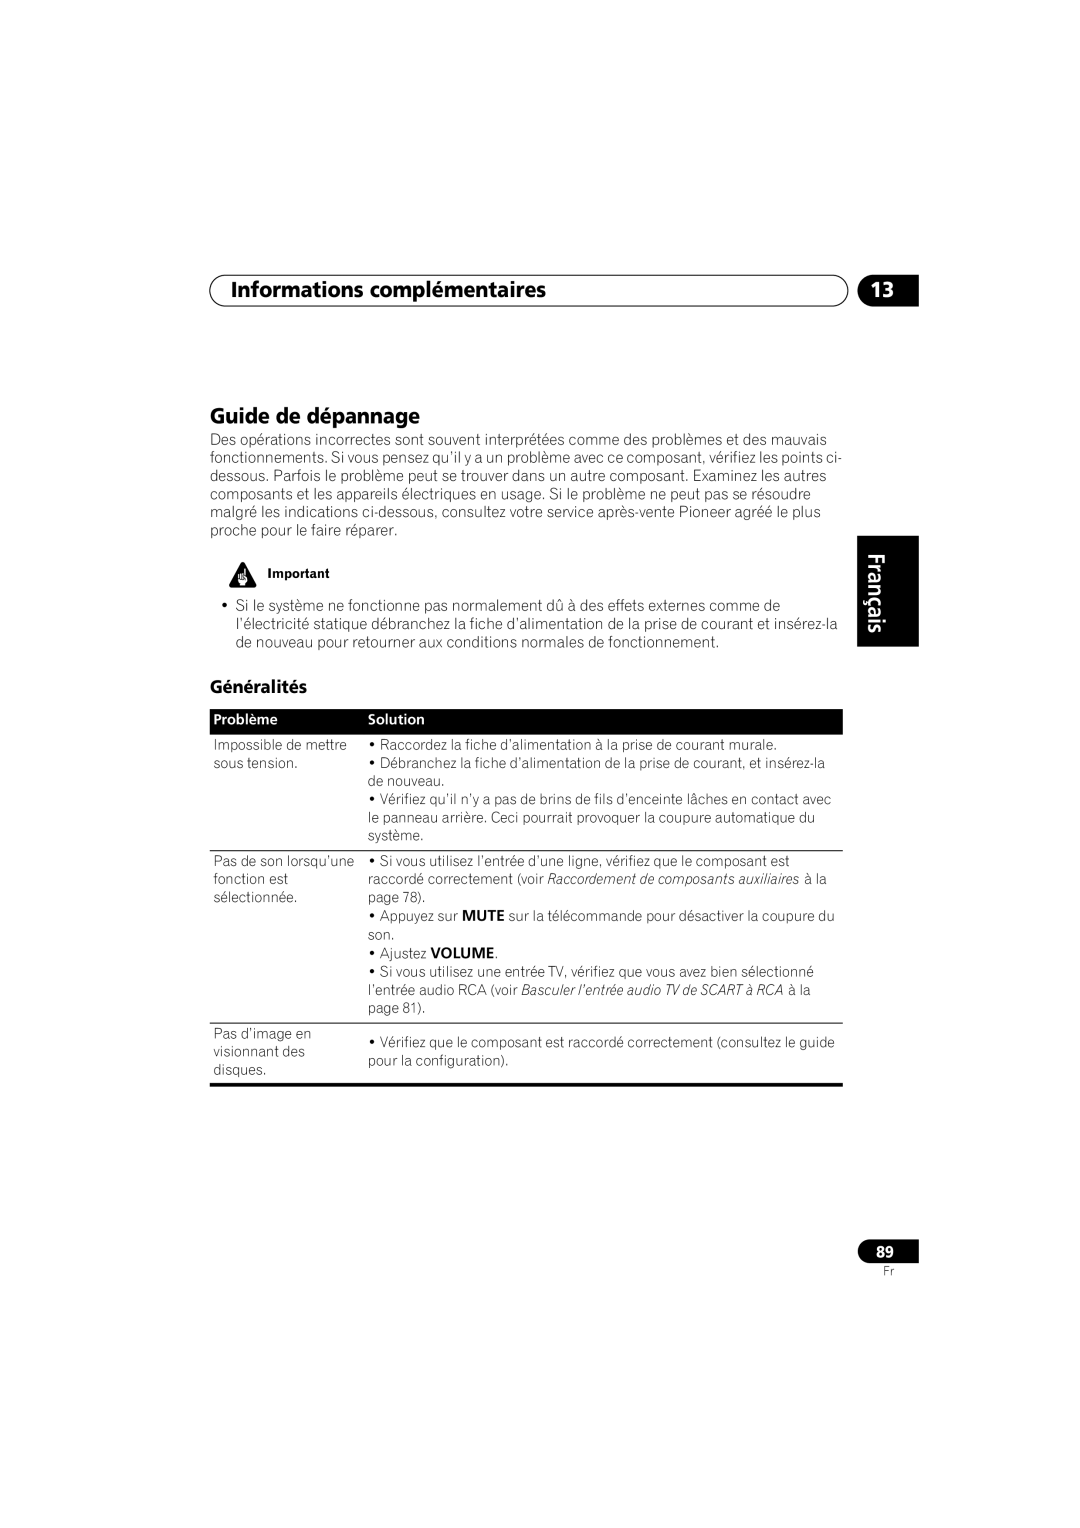 Pioneer S-DV99ST, S-DV990ST Informations complémentaires Guide de dépannage, Français, Généralités, Problème, Solution 